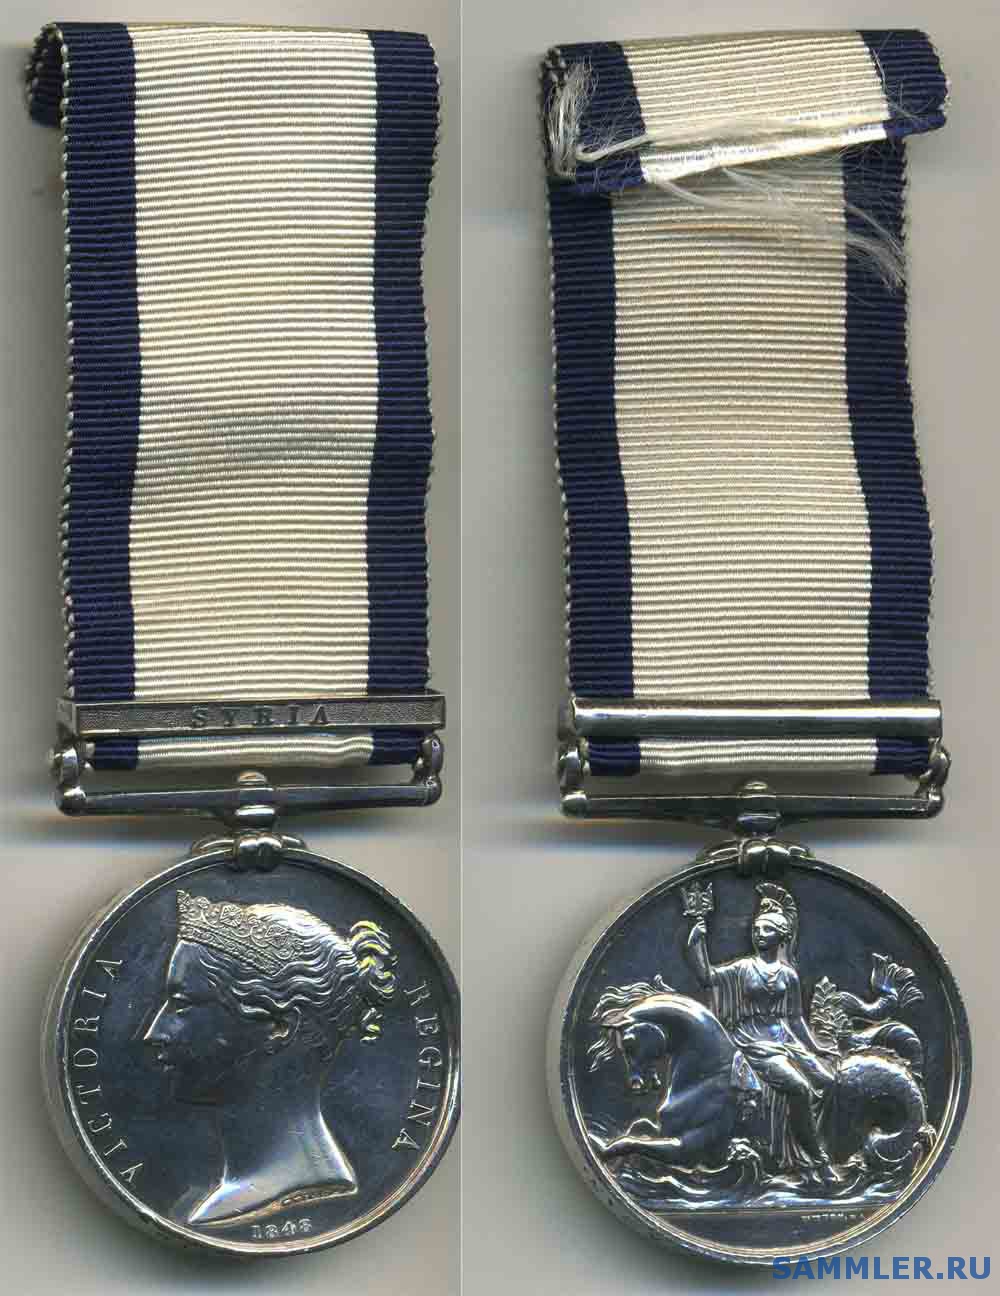 Naval_General_Service_Medal_1793_1840.jpg